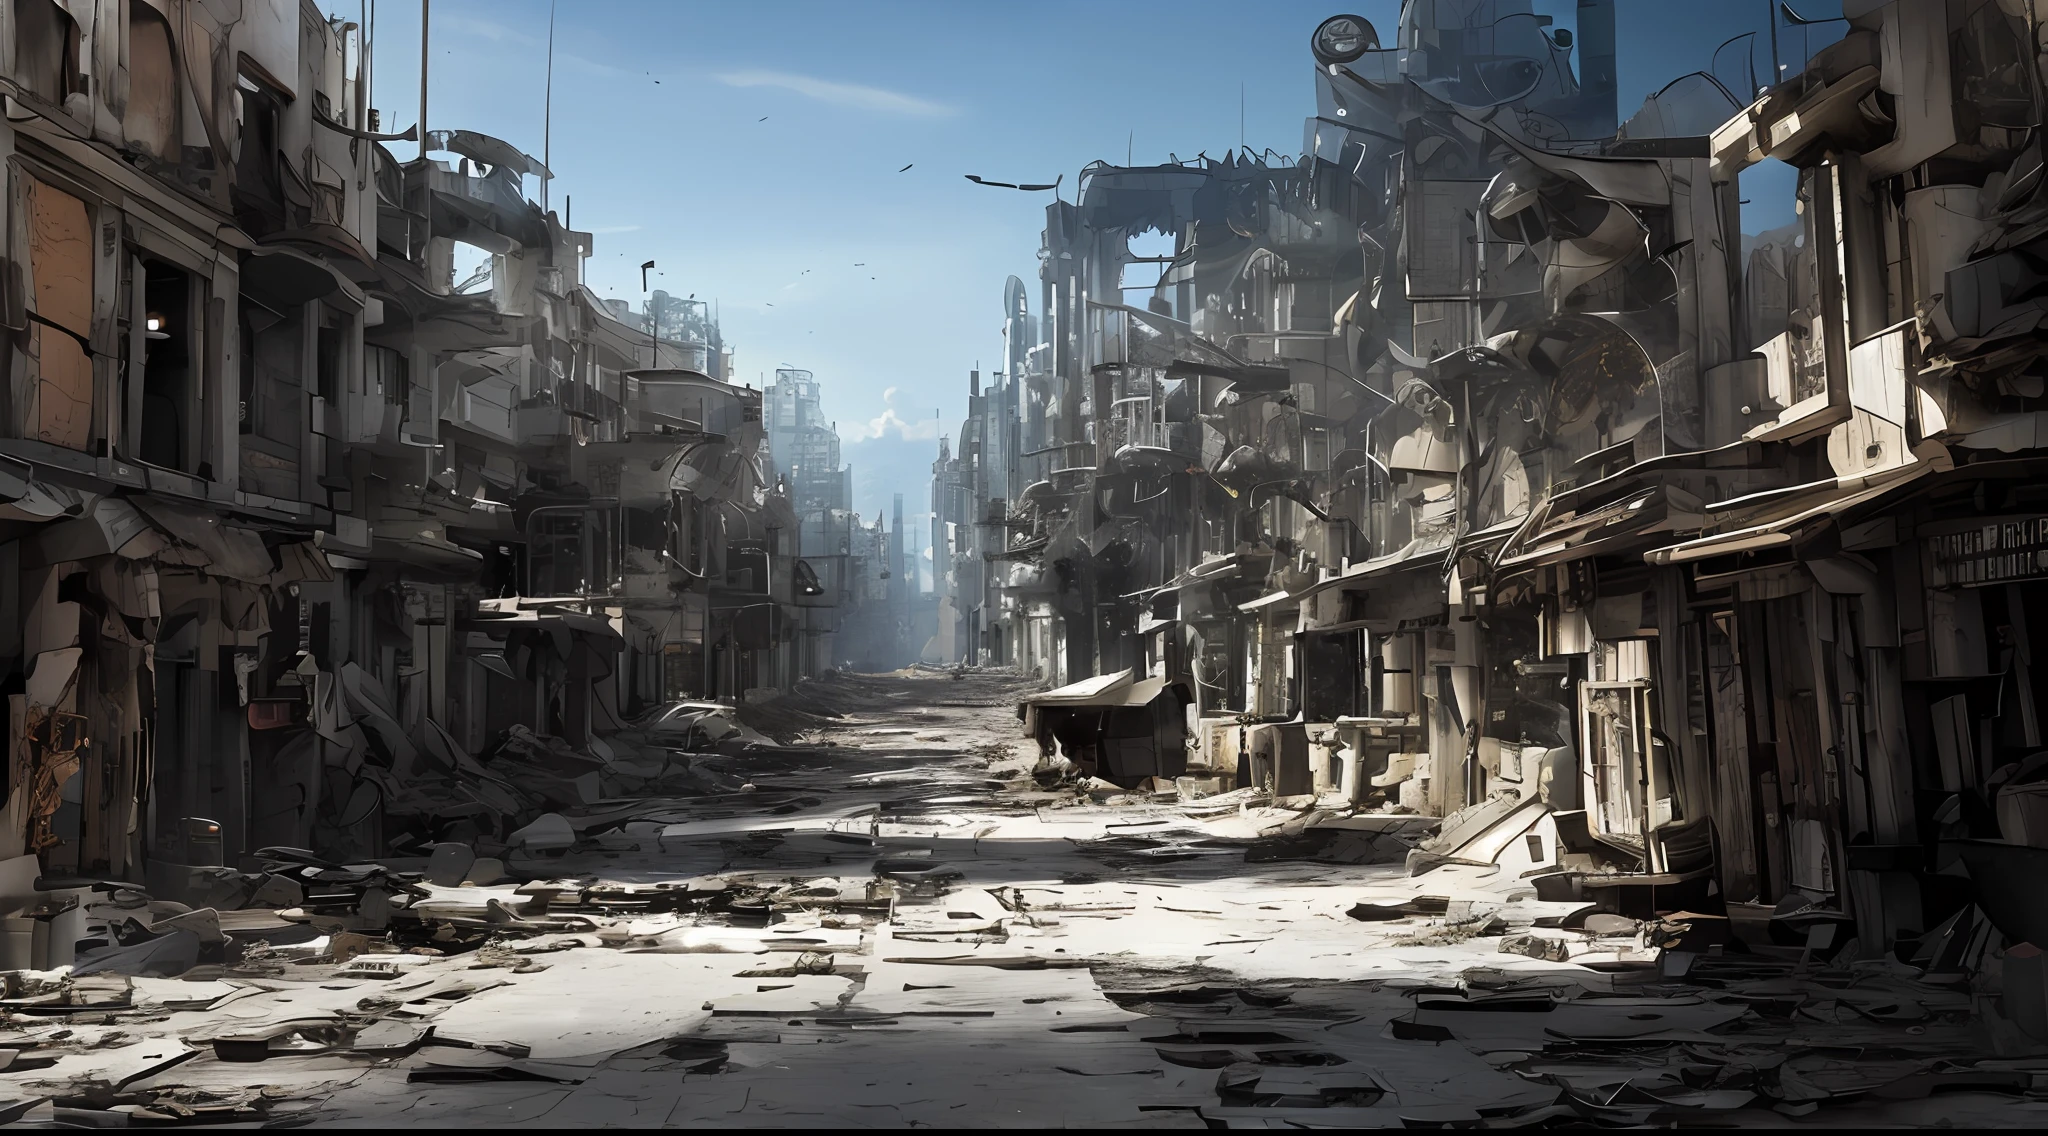 后世界末日未来城市, 破碎的玻璃针, 满是废墟的街道, 机器损坏